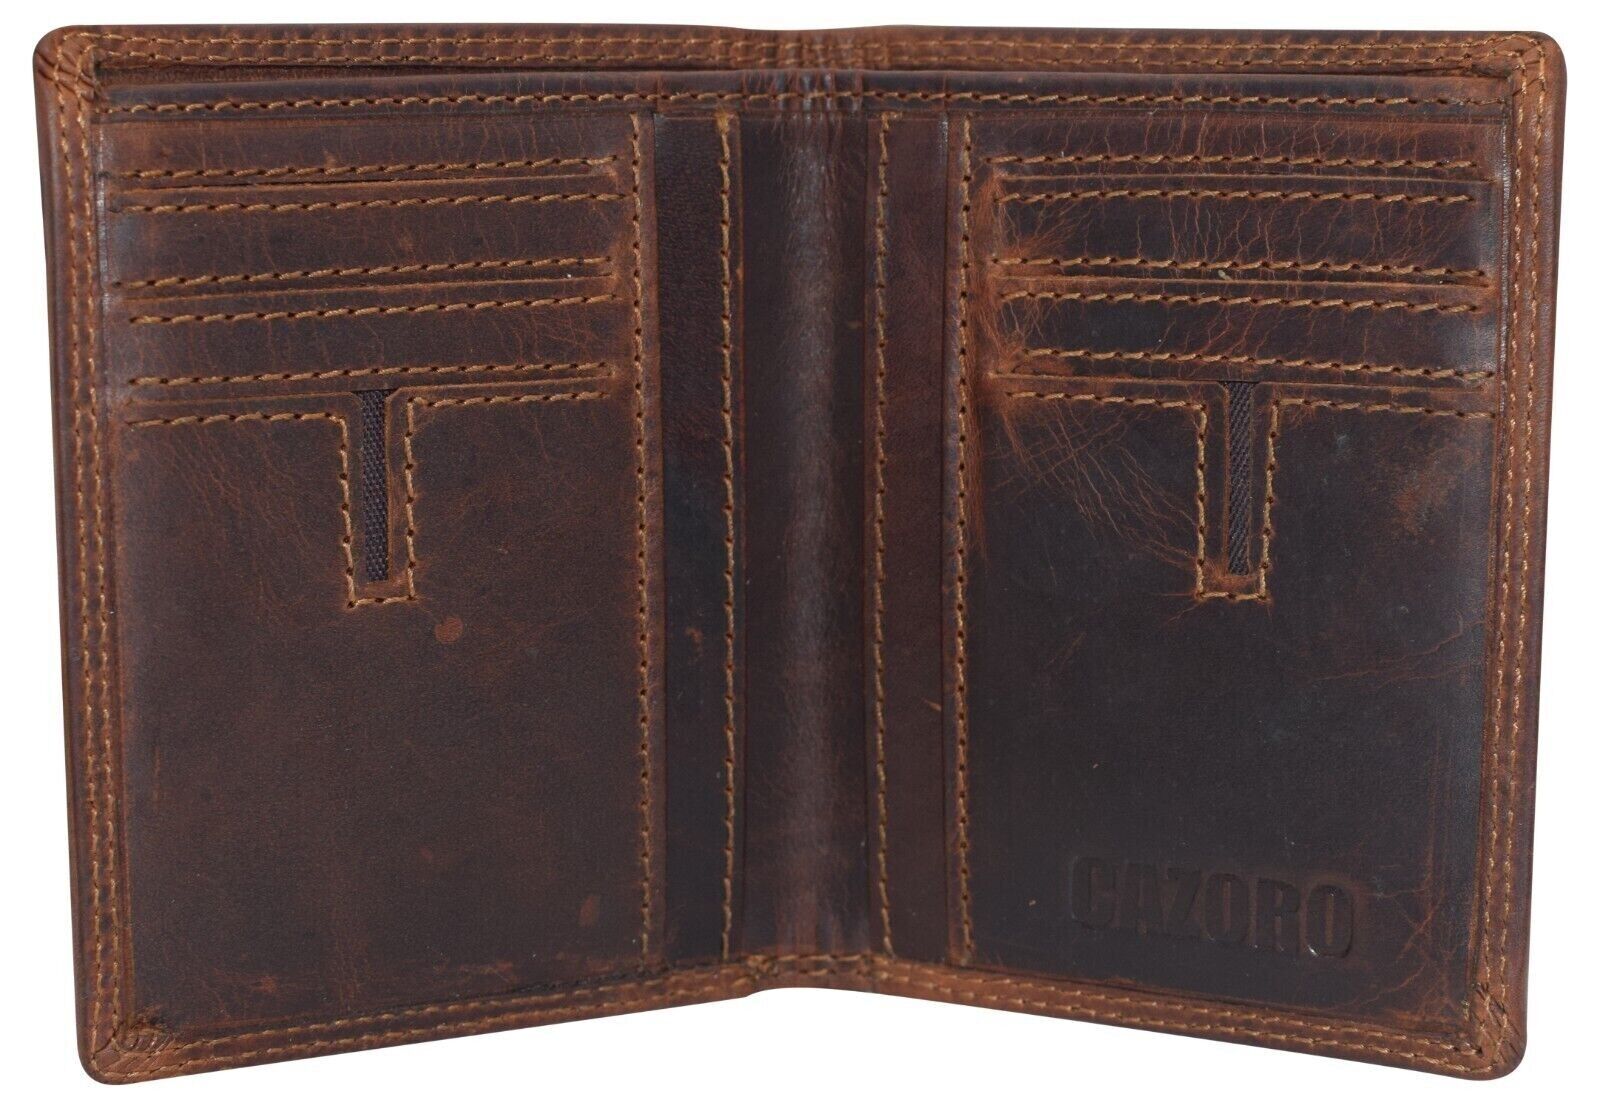 Vintage Leather Mens Slim Bifold Wallet RFID Blocking Credit Card Holder Wallets